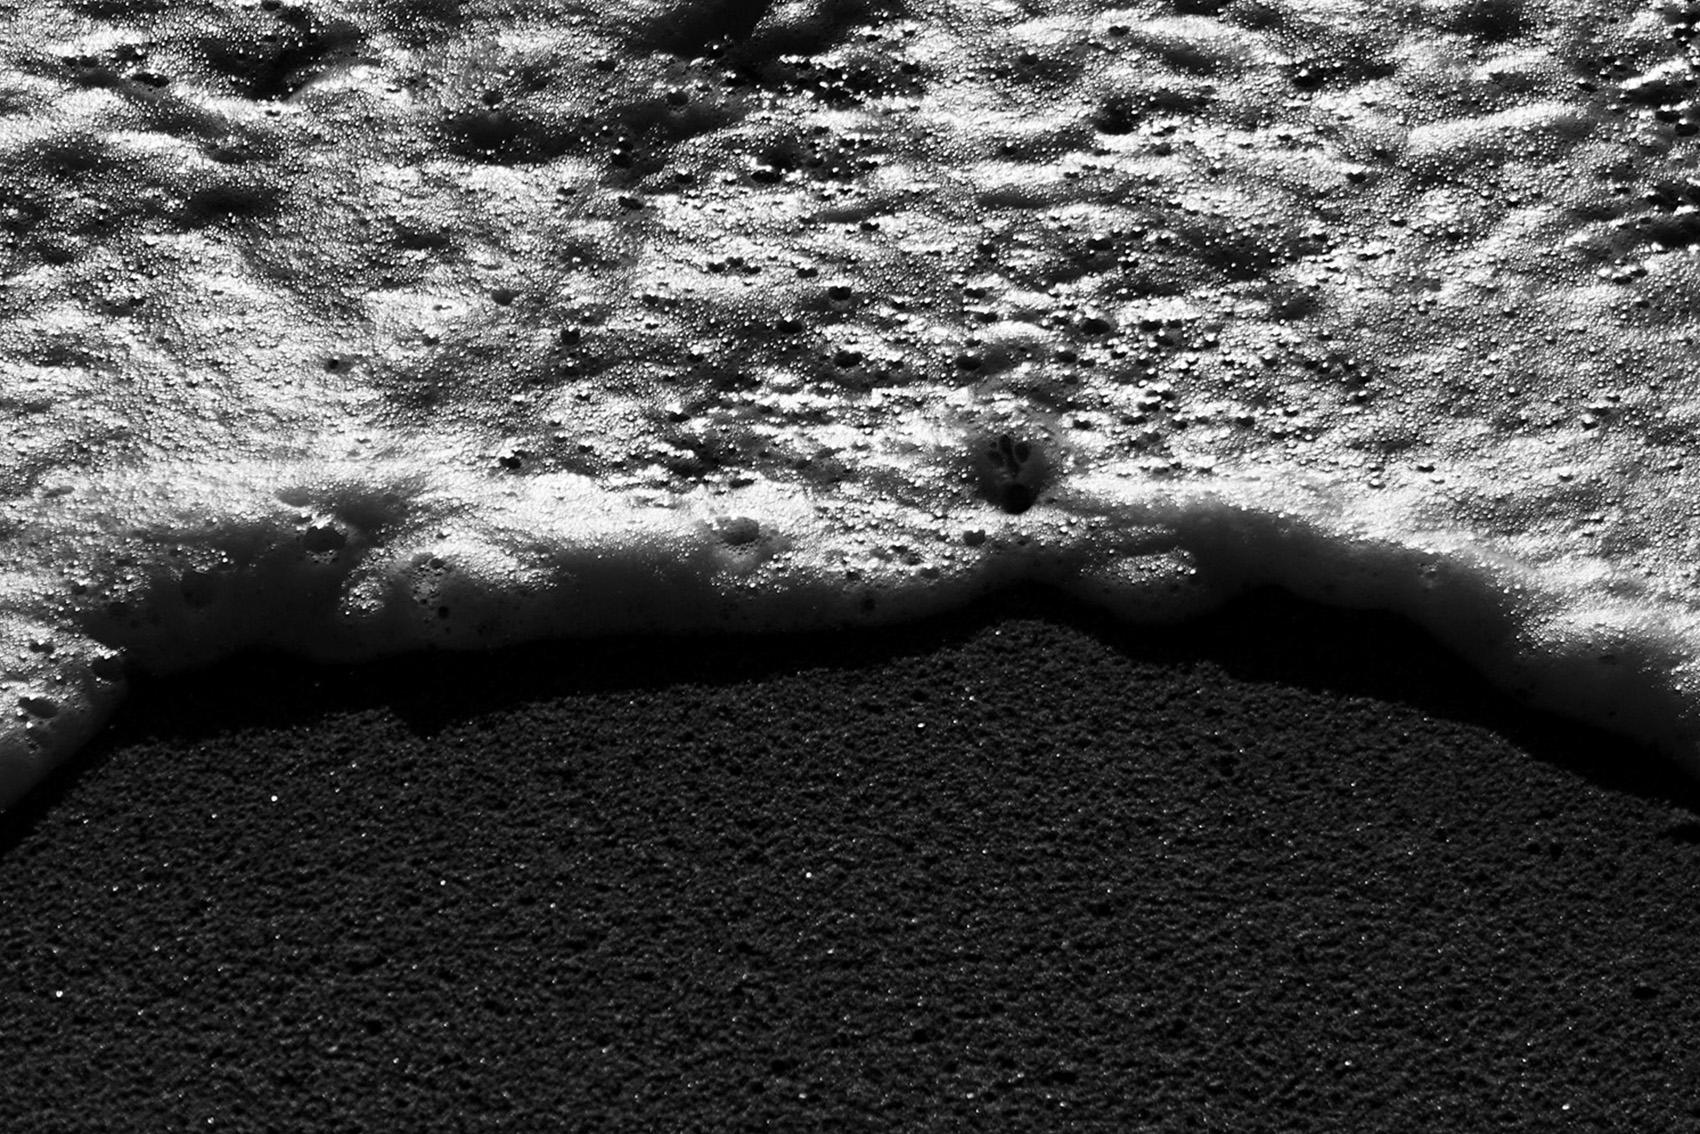 Grand paysage marin vertical noir et blanc de chauve-souris Foamy, style Sugimoto, chaussure - Contemporain Photograph par Kind of Cyan